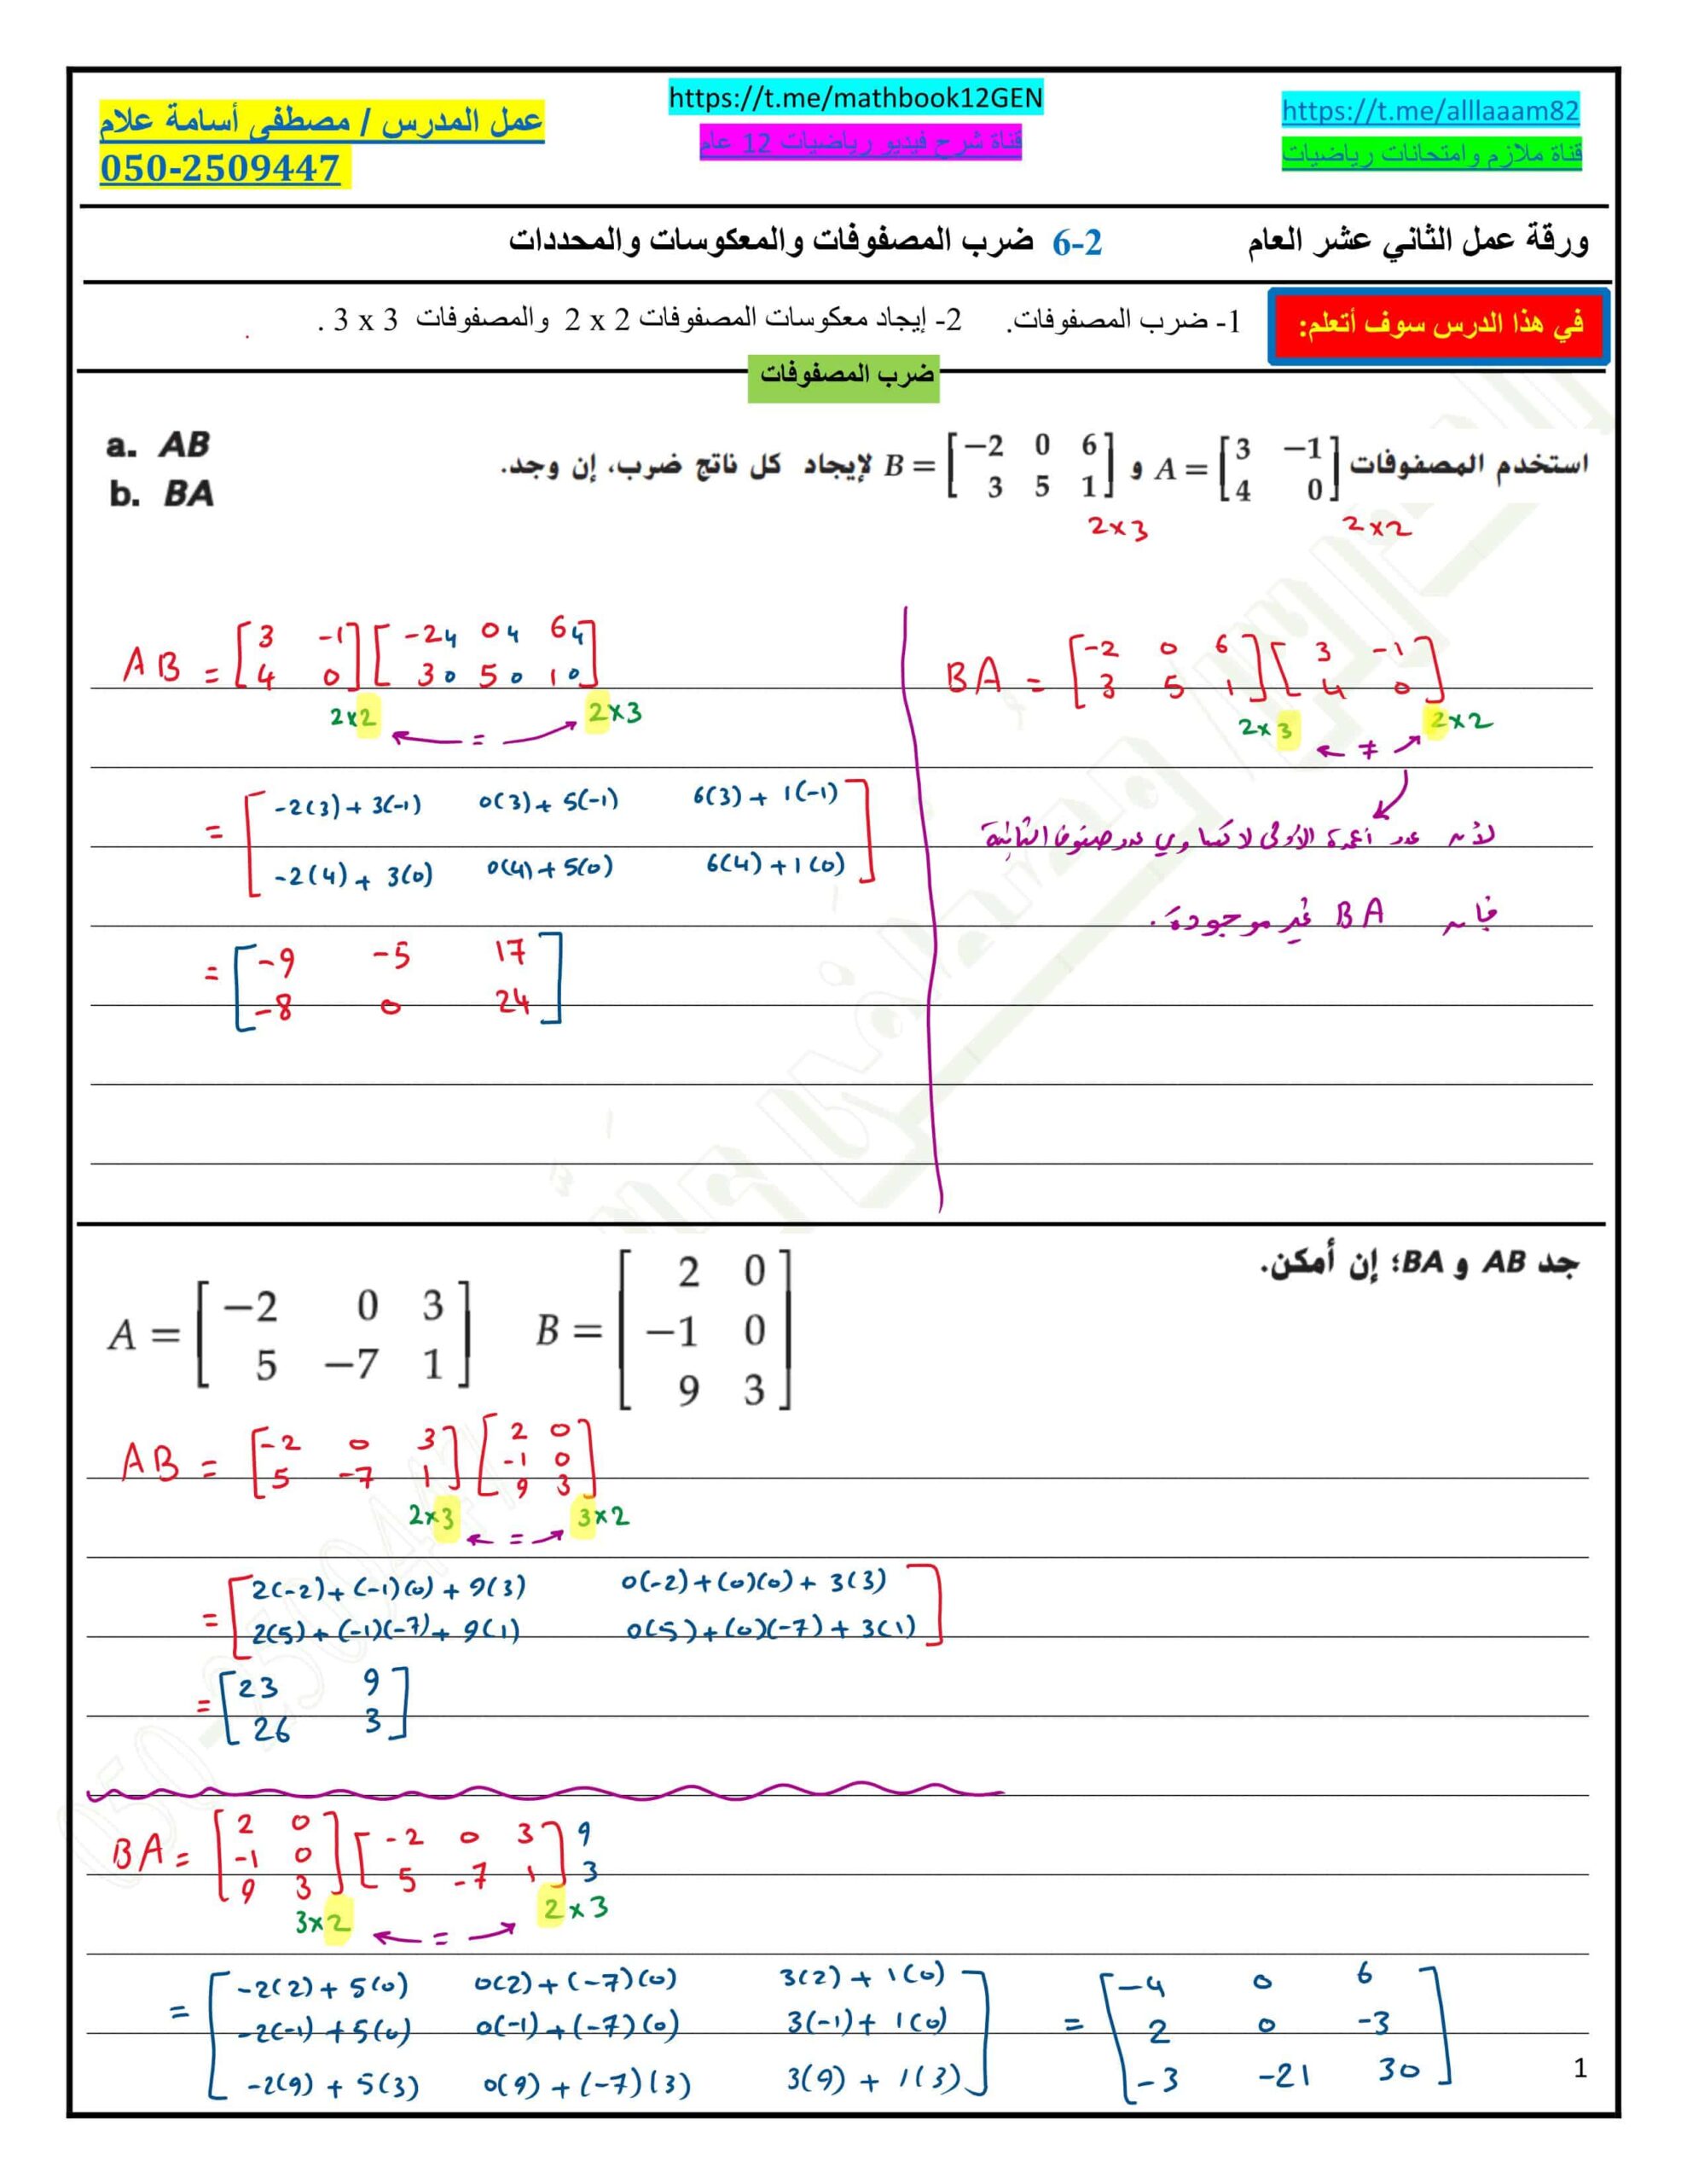 حل ورقة عمل ضرب المصفوفات والمعكوسات والمحددات الرياضيات المتكاملة الصف الثاني عشر عام